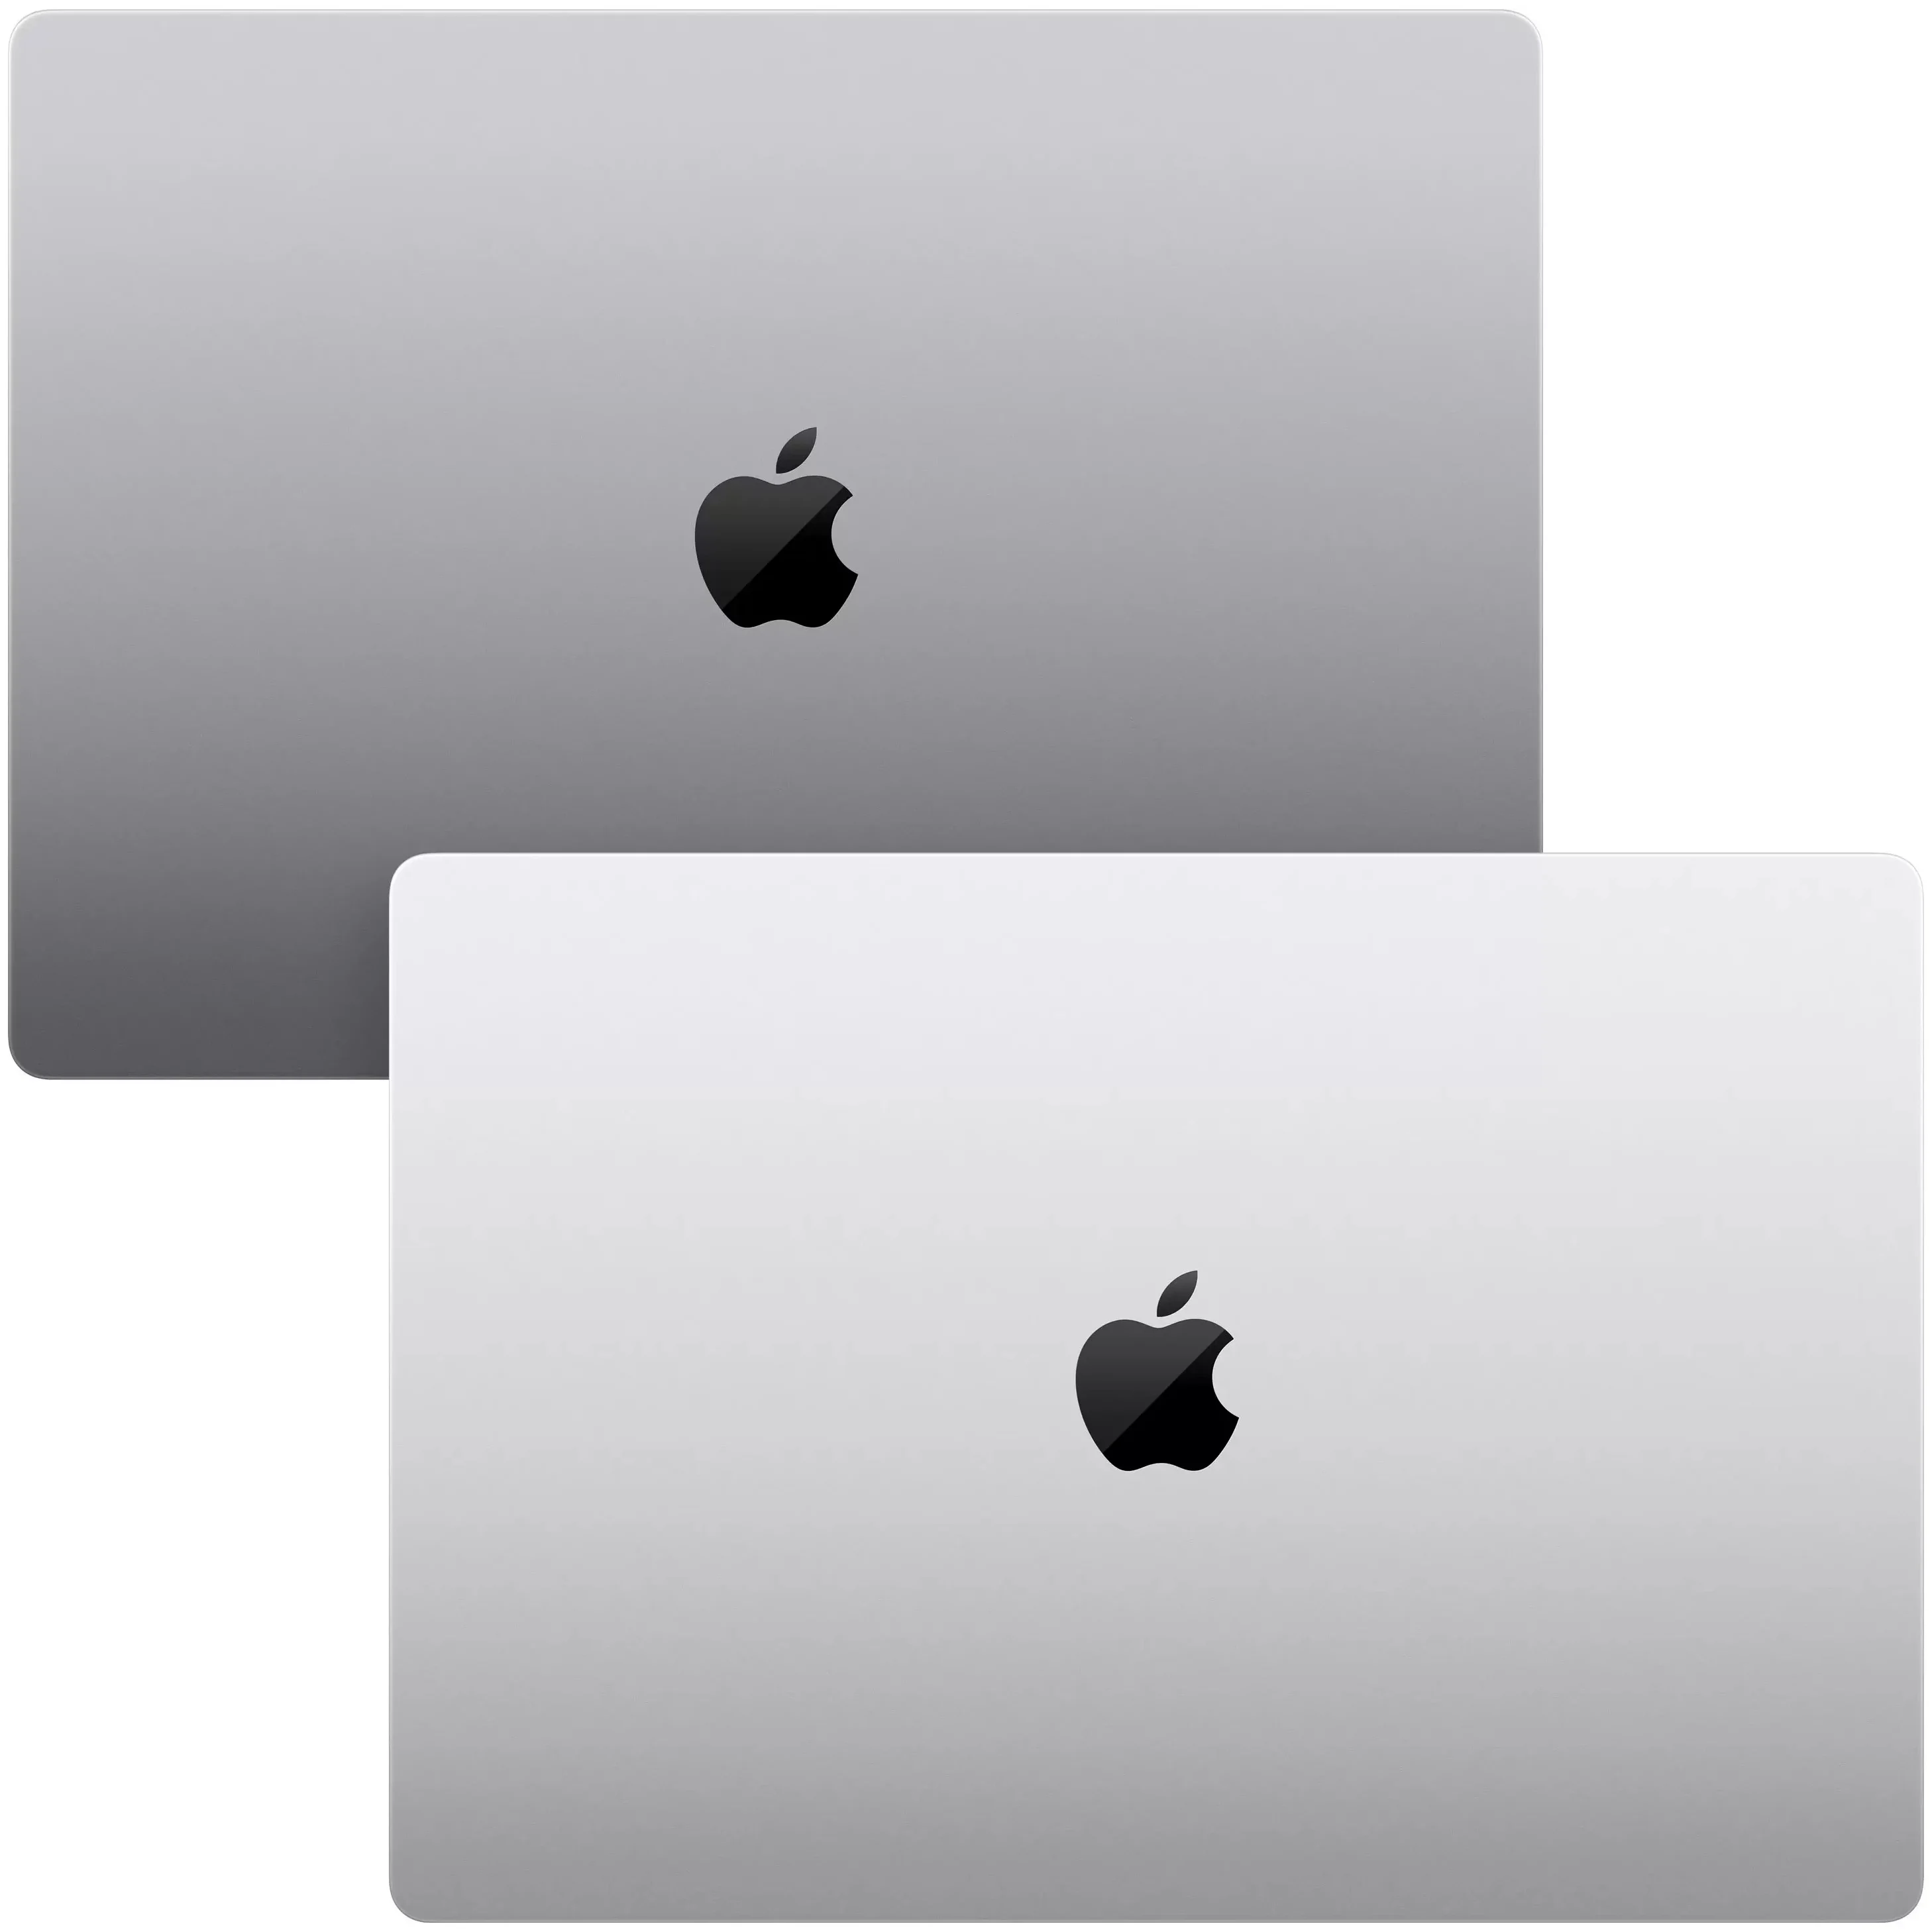 14.2" Apple Macbook Pro Late 2021 - pазмеры: 312.6x221.2x15.5 мм